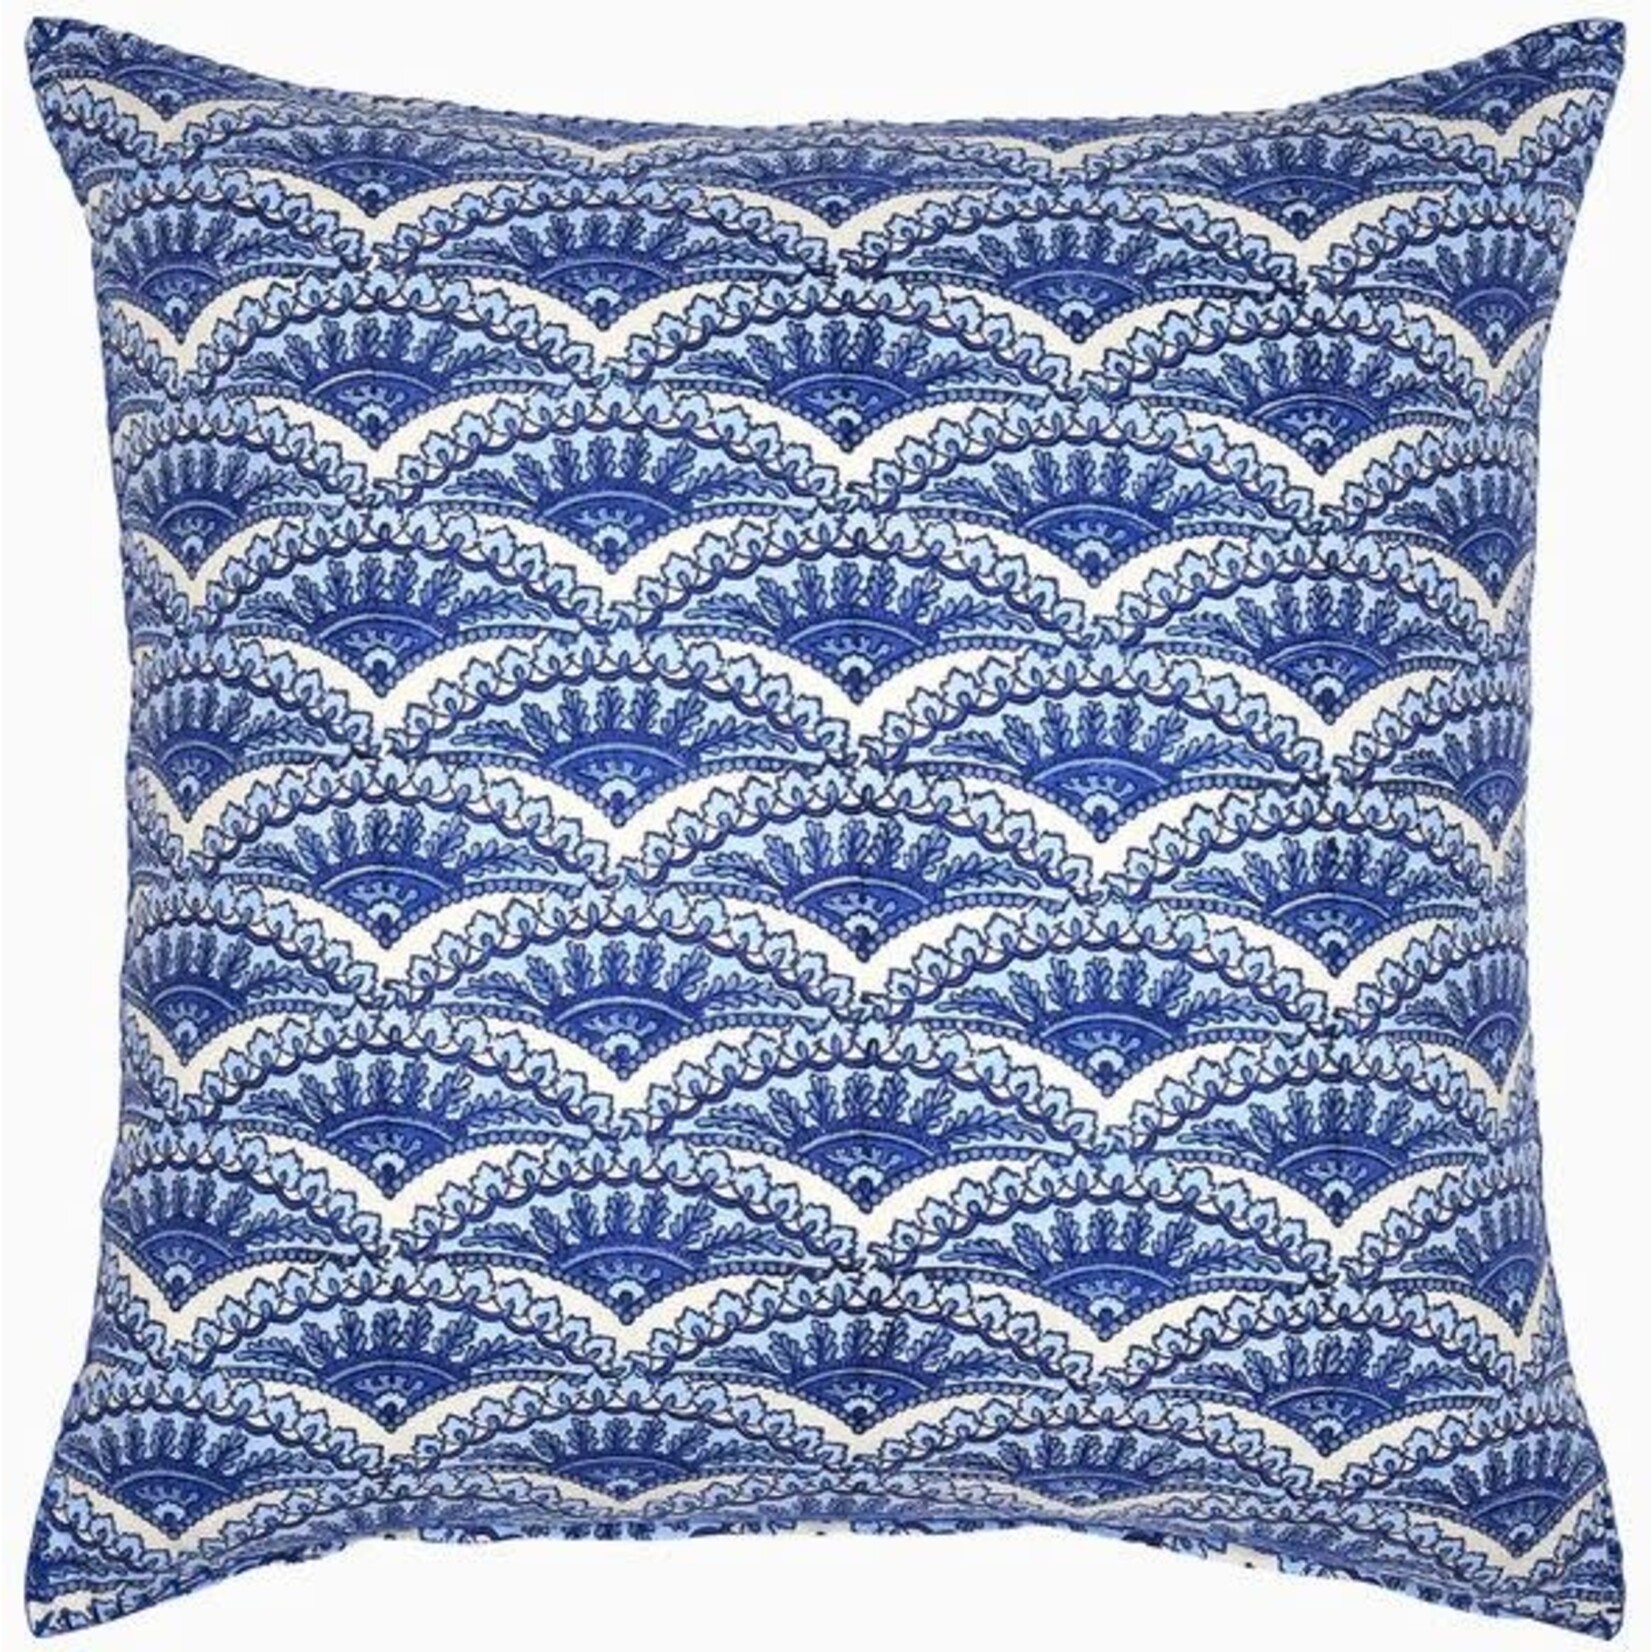 John Robshaw Textiles Elil Euro Pillow with Insert 26x26